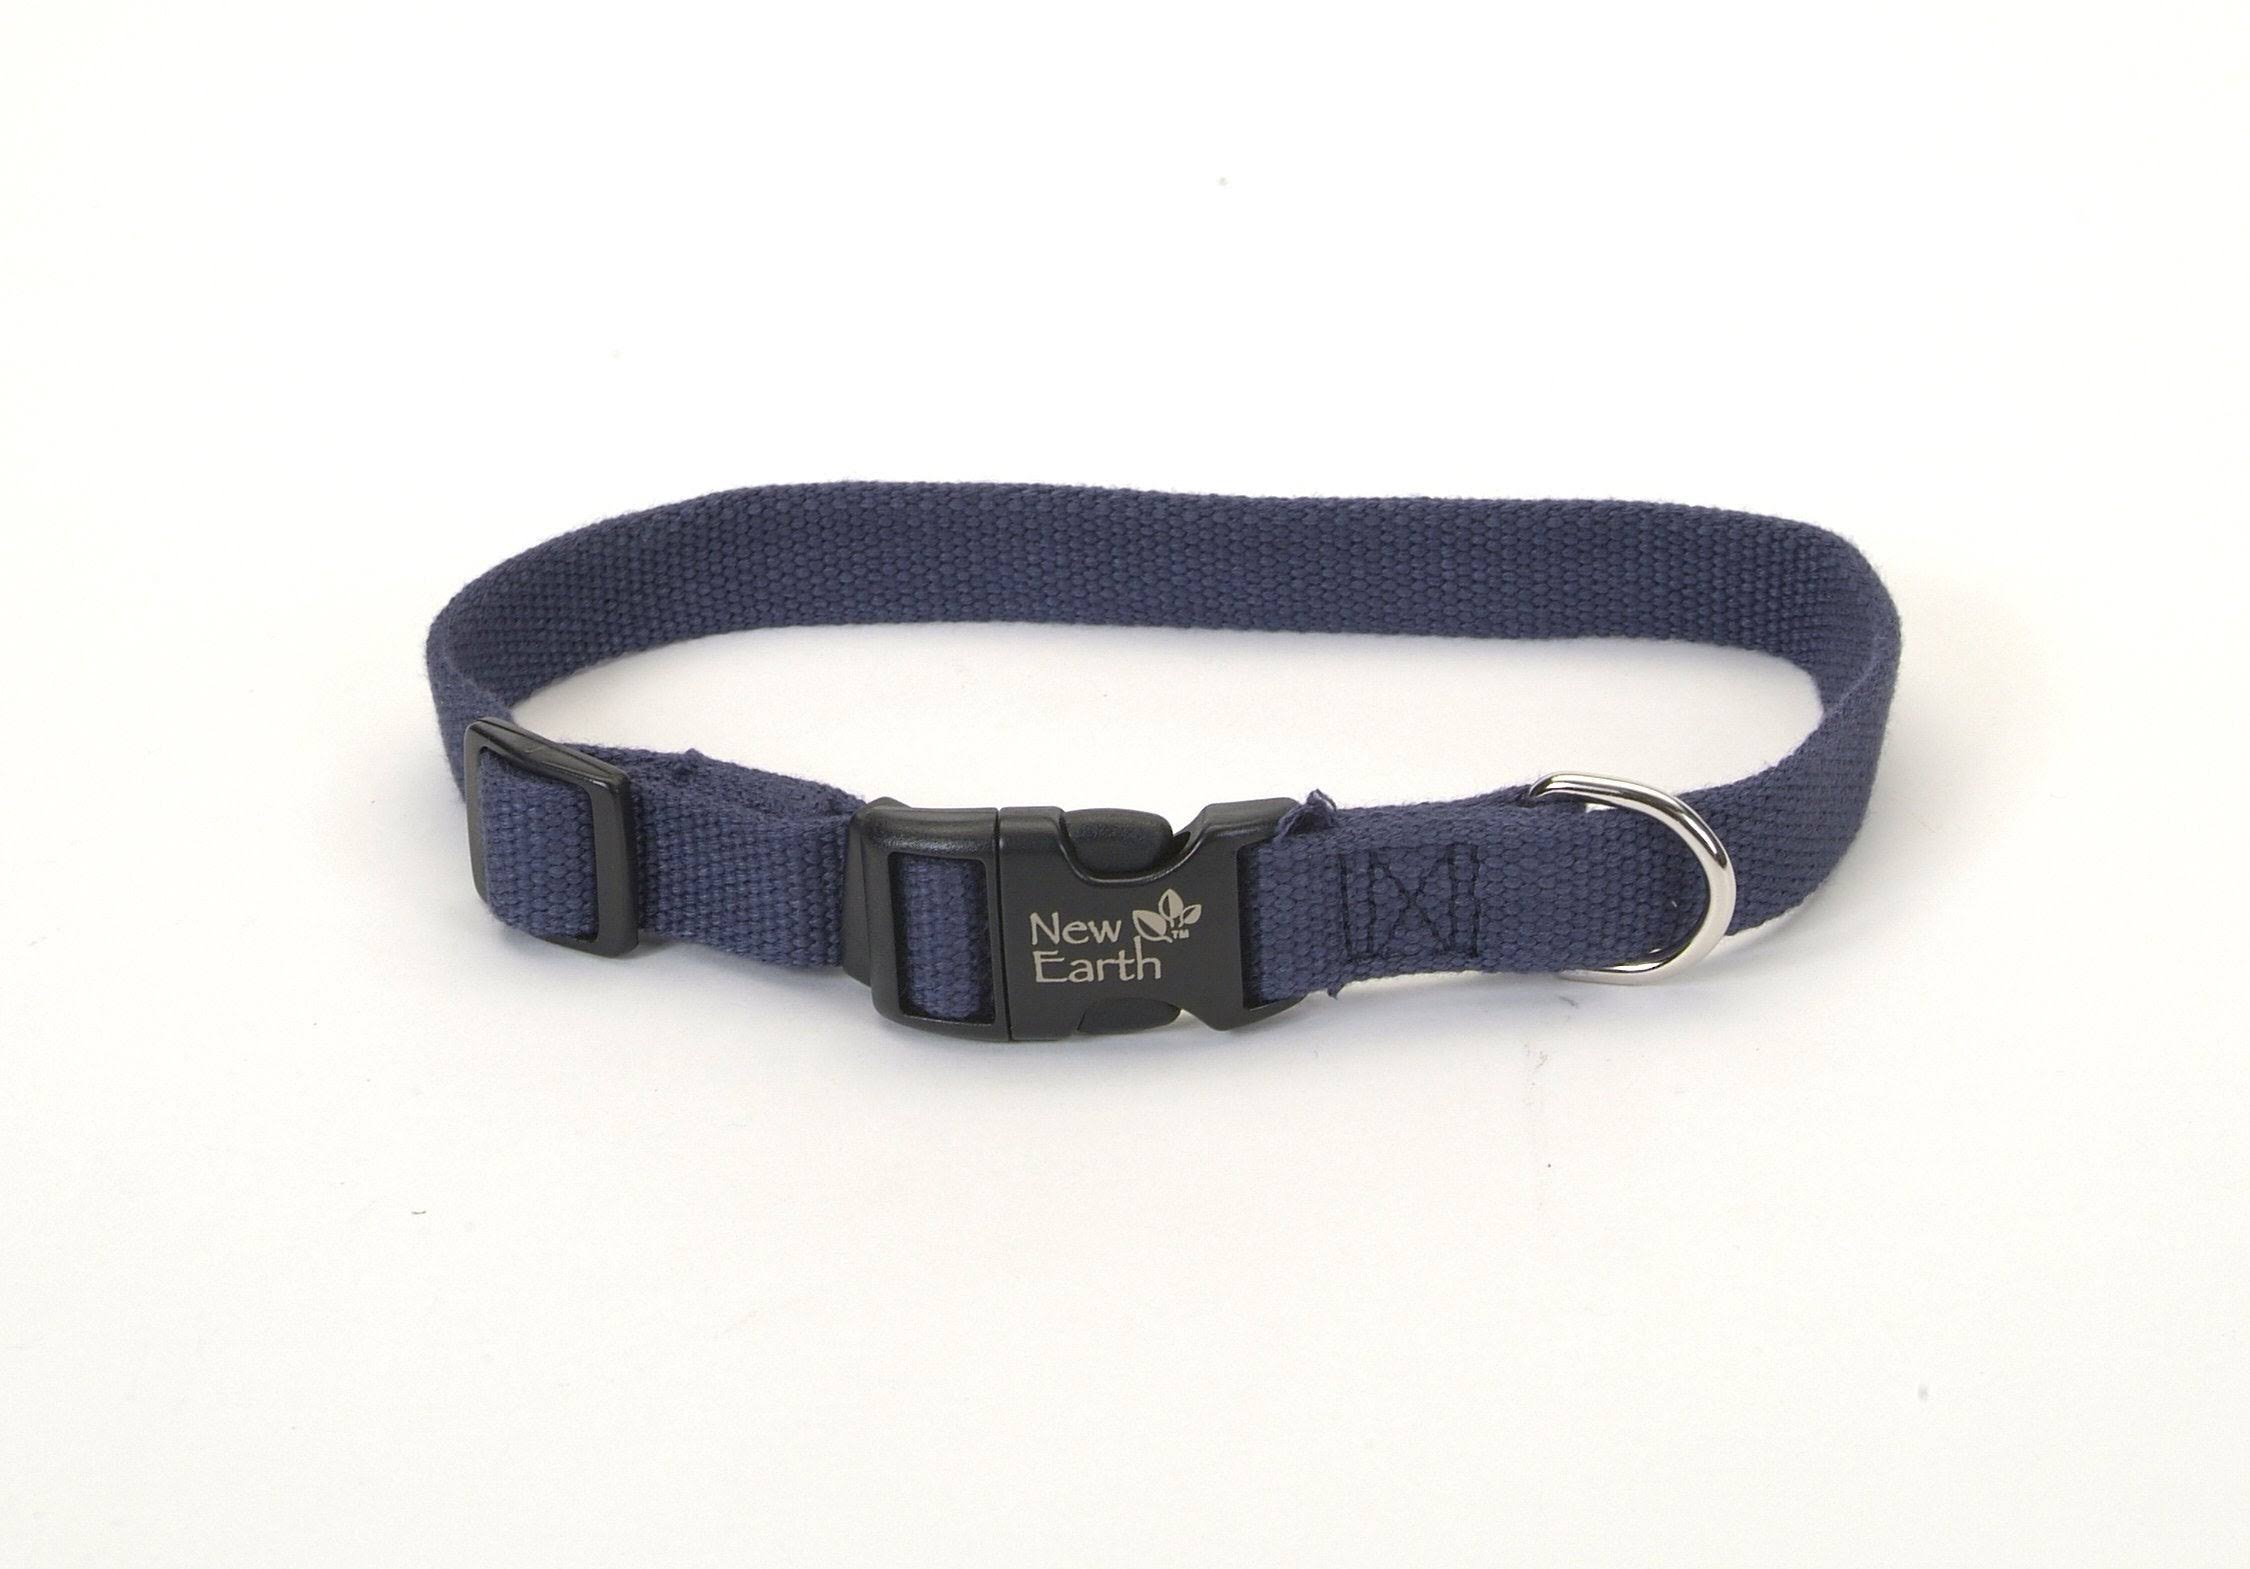 Coastal Earth Soy Dog Collar - Indigo Blue, 1"x18-26"